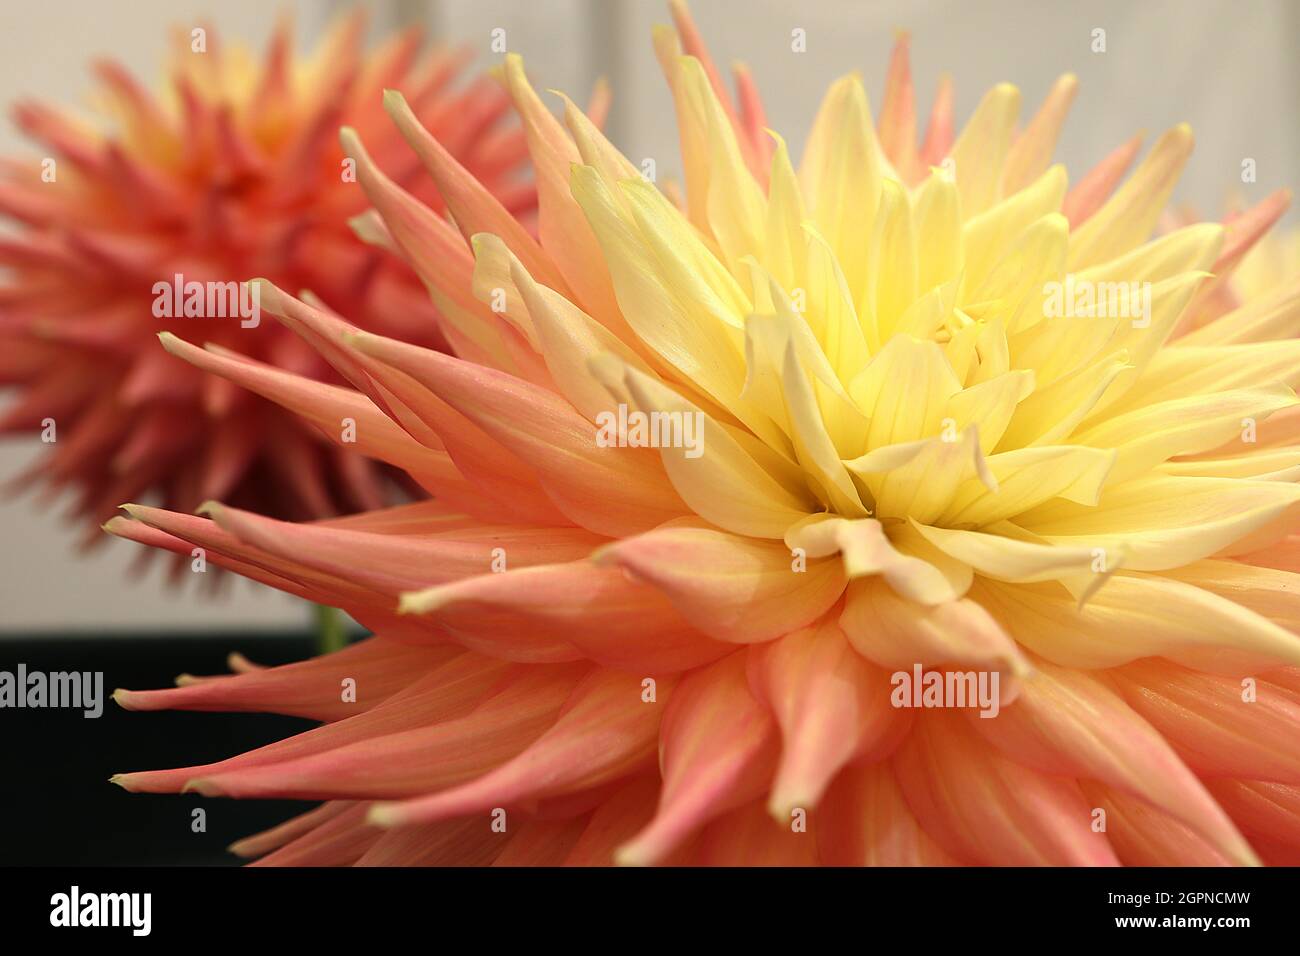 Dahlia ‘Grenadier Pastelle’ Semi-Kaktus Dahlia Group 9 ombre Effect Blüten von blassgelb über blassorange bis zu korallenrosa Blütenblättern, gerollte stachelige Blütenblätter, Stockfoto